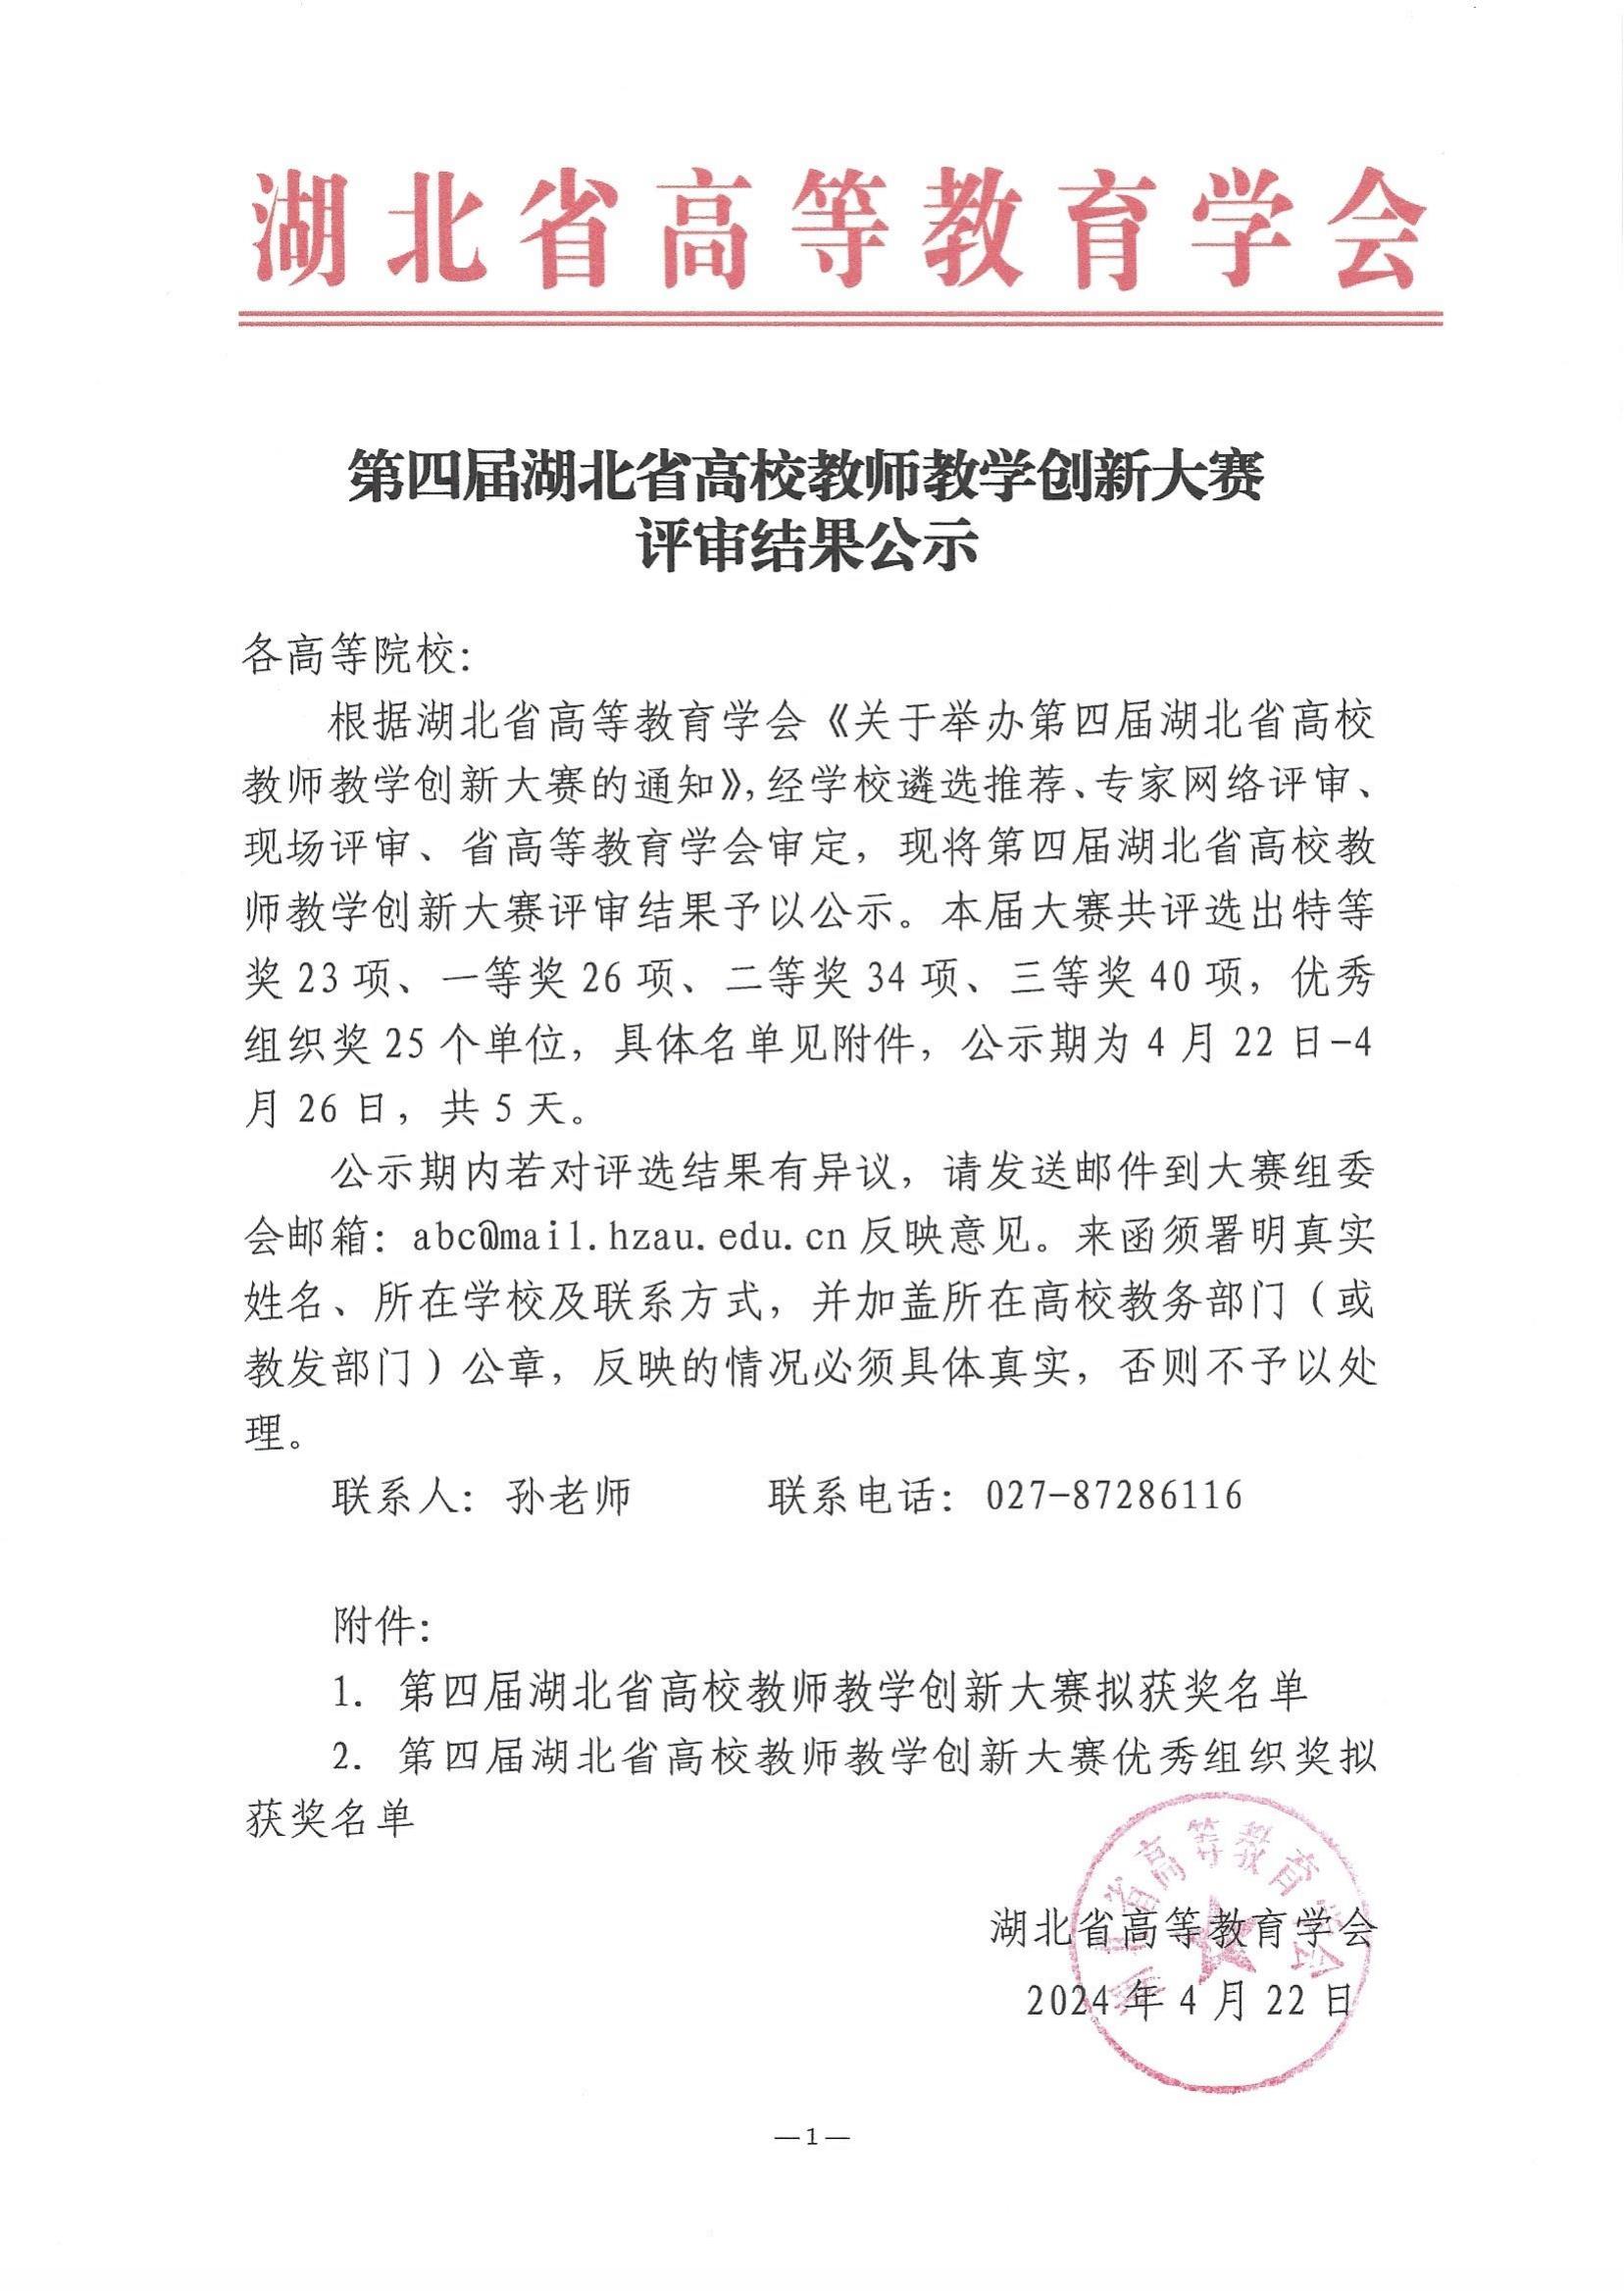 第四届湖北省高校教师教学创新大赛评审结果公示_00.jpg